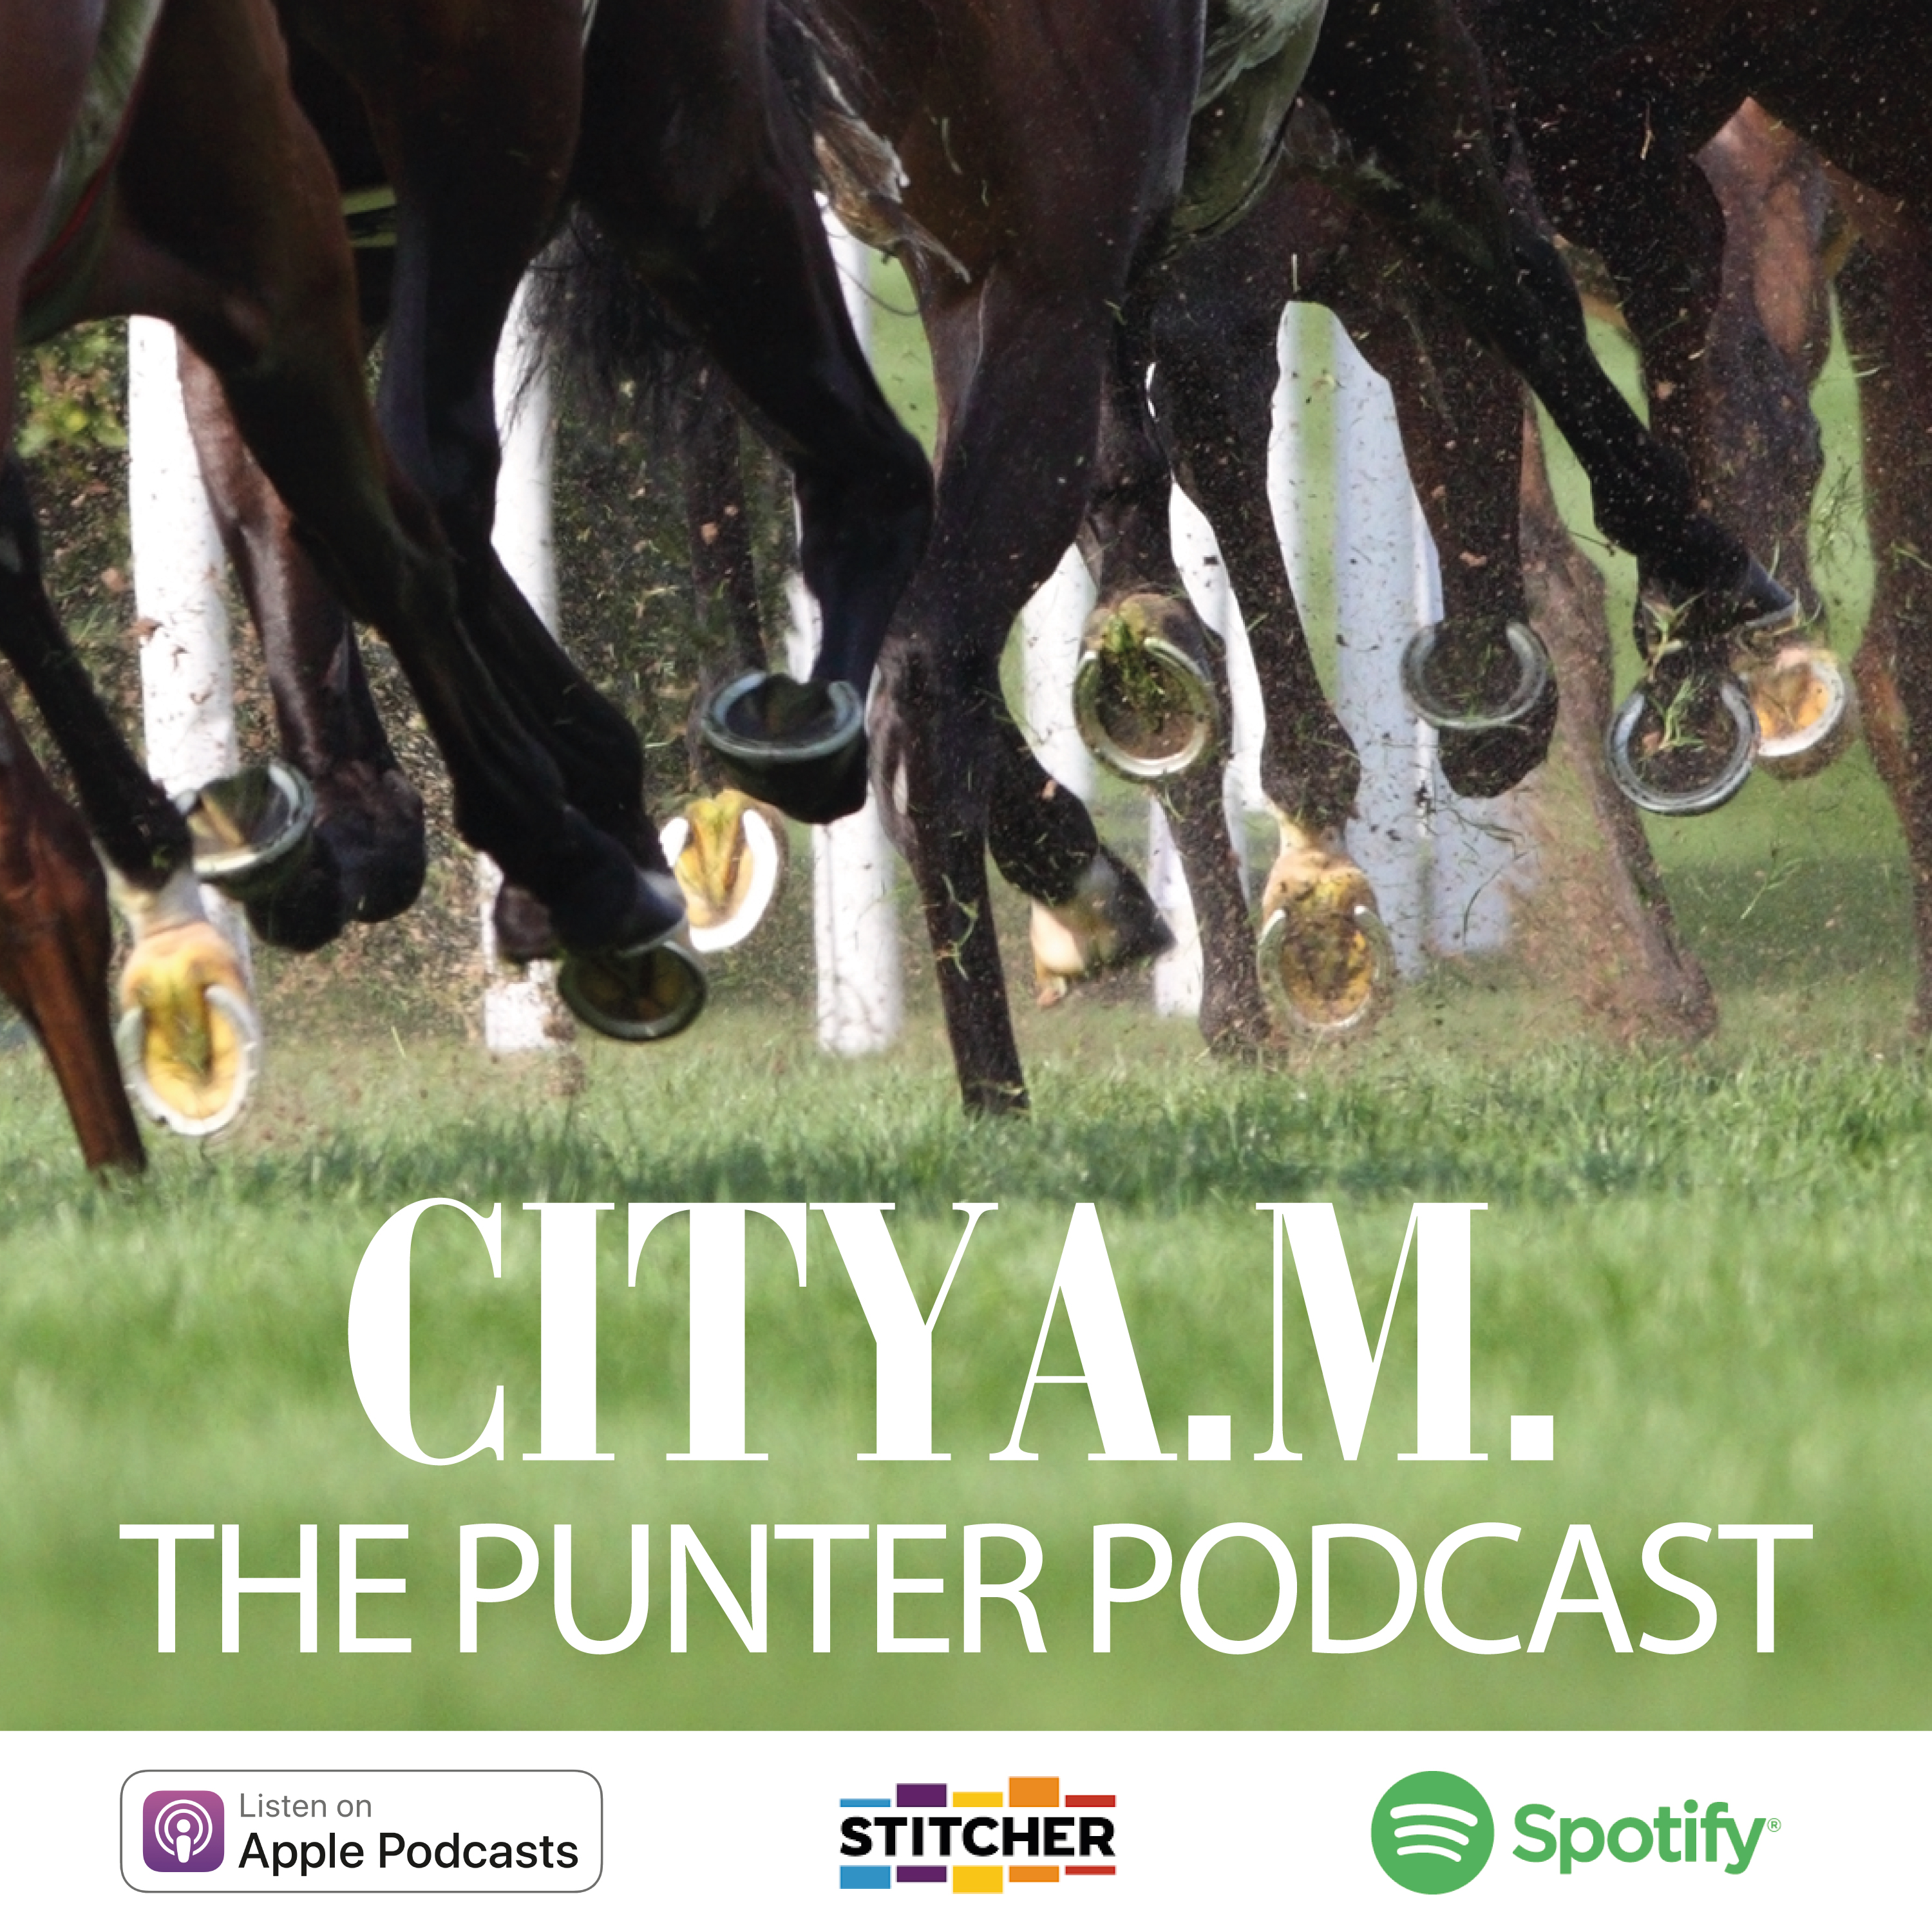 January 7th - Punter Podcast Summary